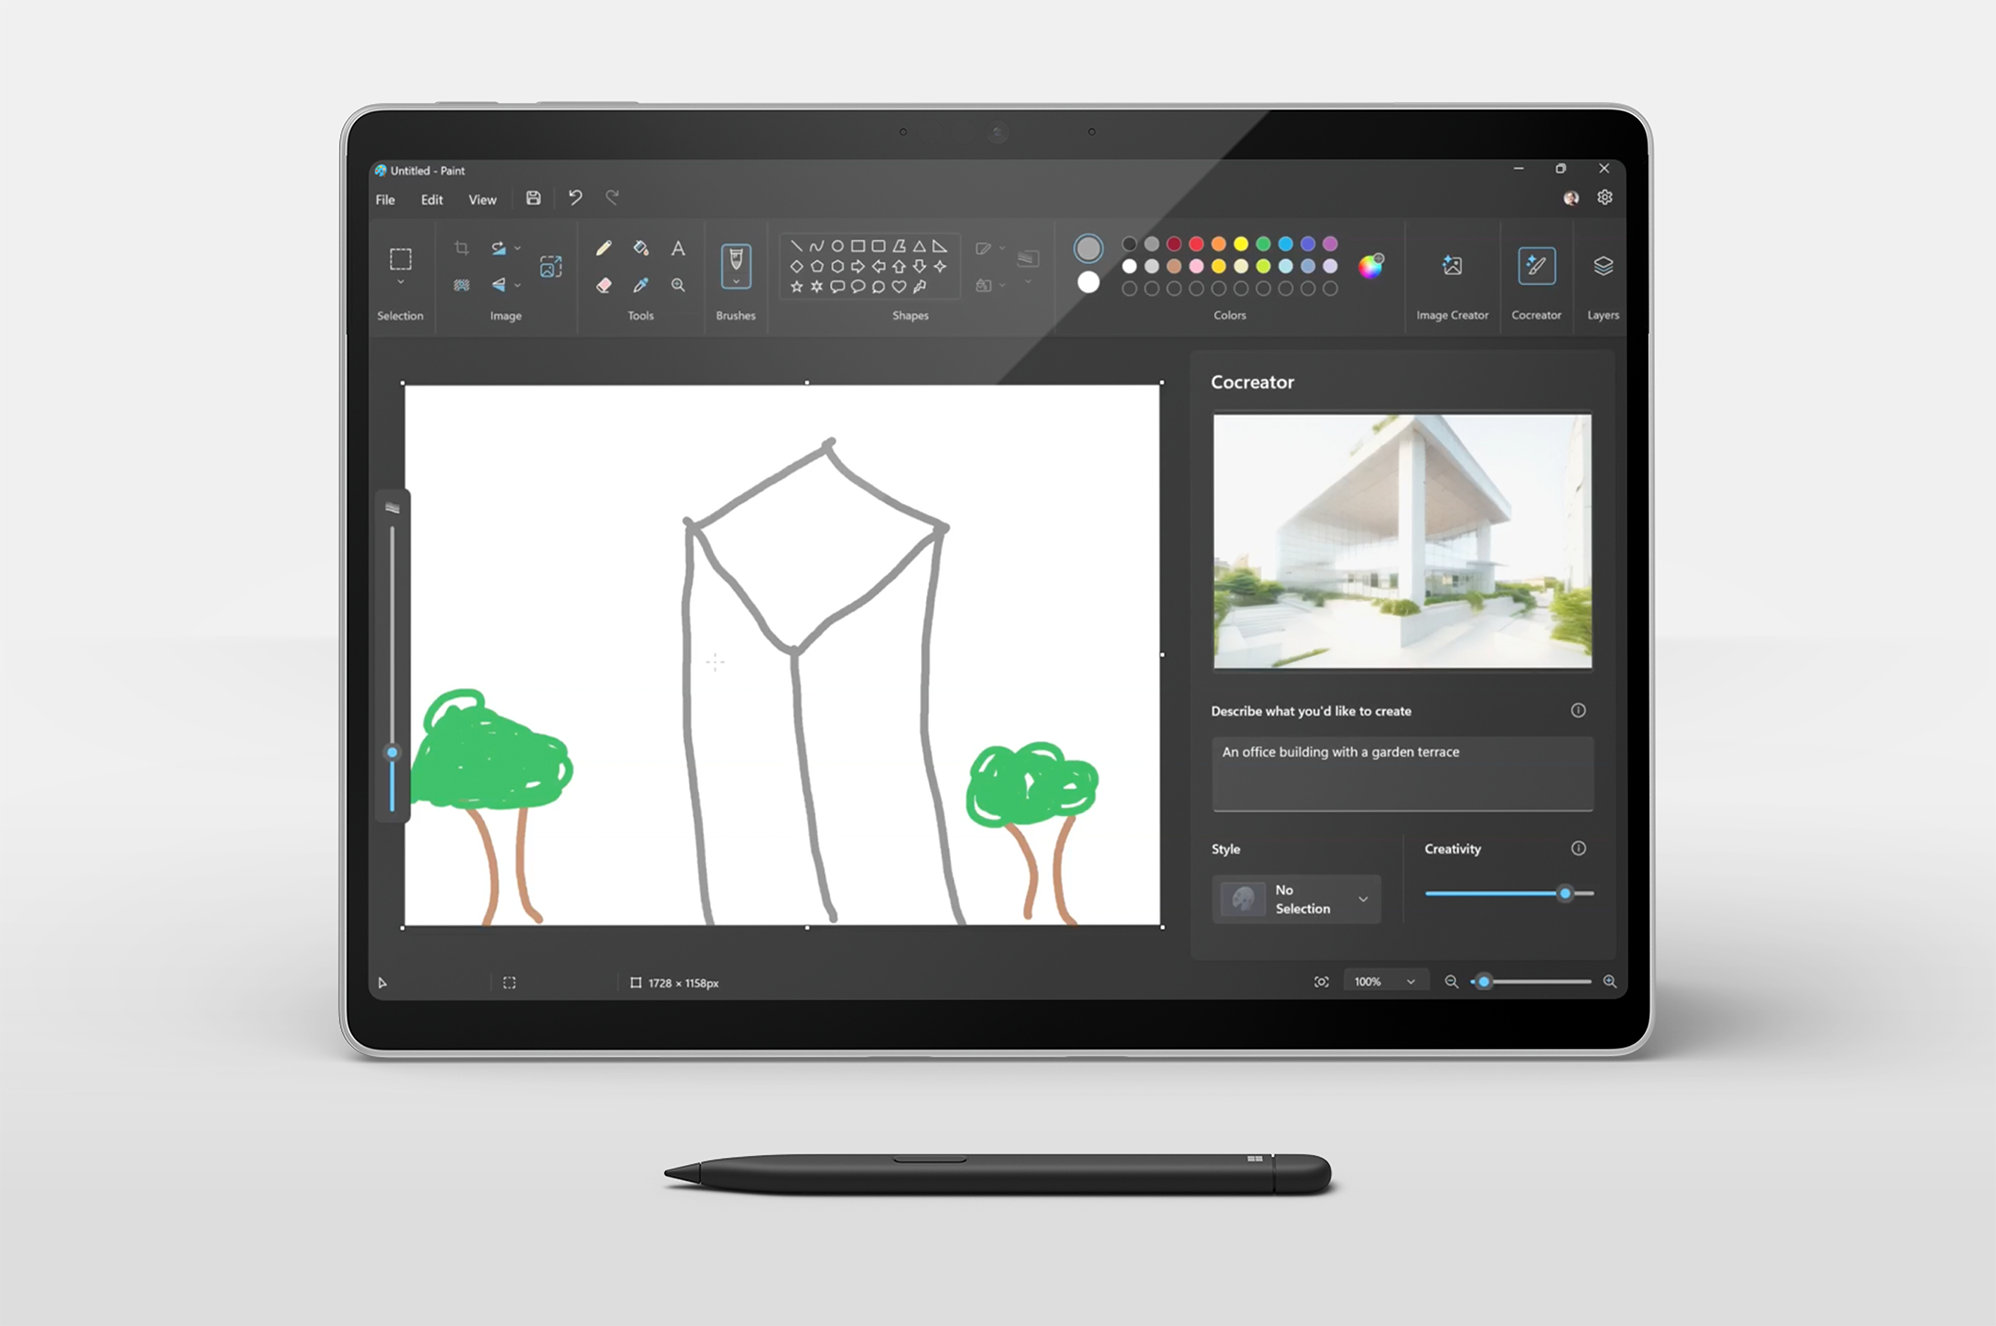 影像顯示 Surface Pro 裝置已拆下鍵盤，螢幕顯示 Cocreator 畫面。